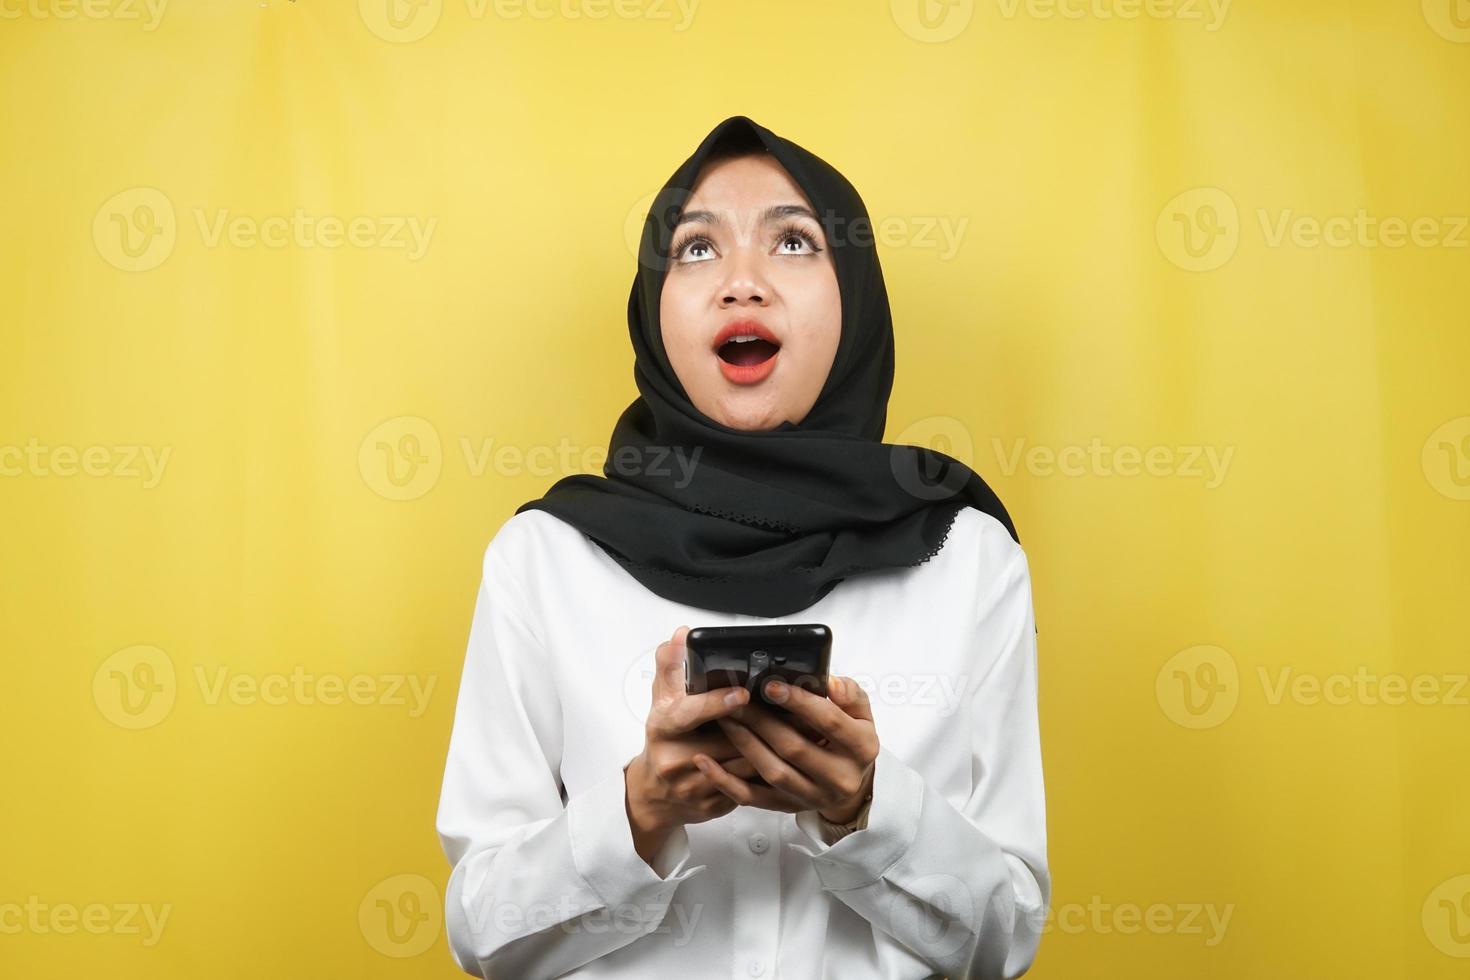 schöne junge asiatische muslimische frau schockiert, überrascht, wow-ausdruck, hand, die smartphone hält, nach oben schauend, isoliert auf gelbem hintergrund foto